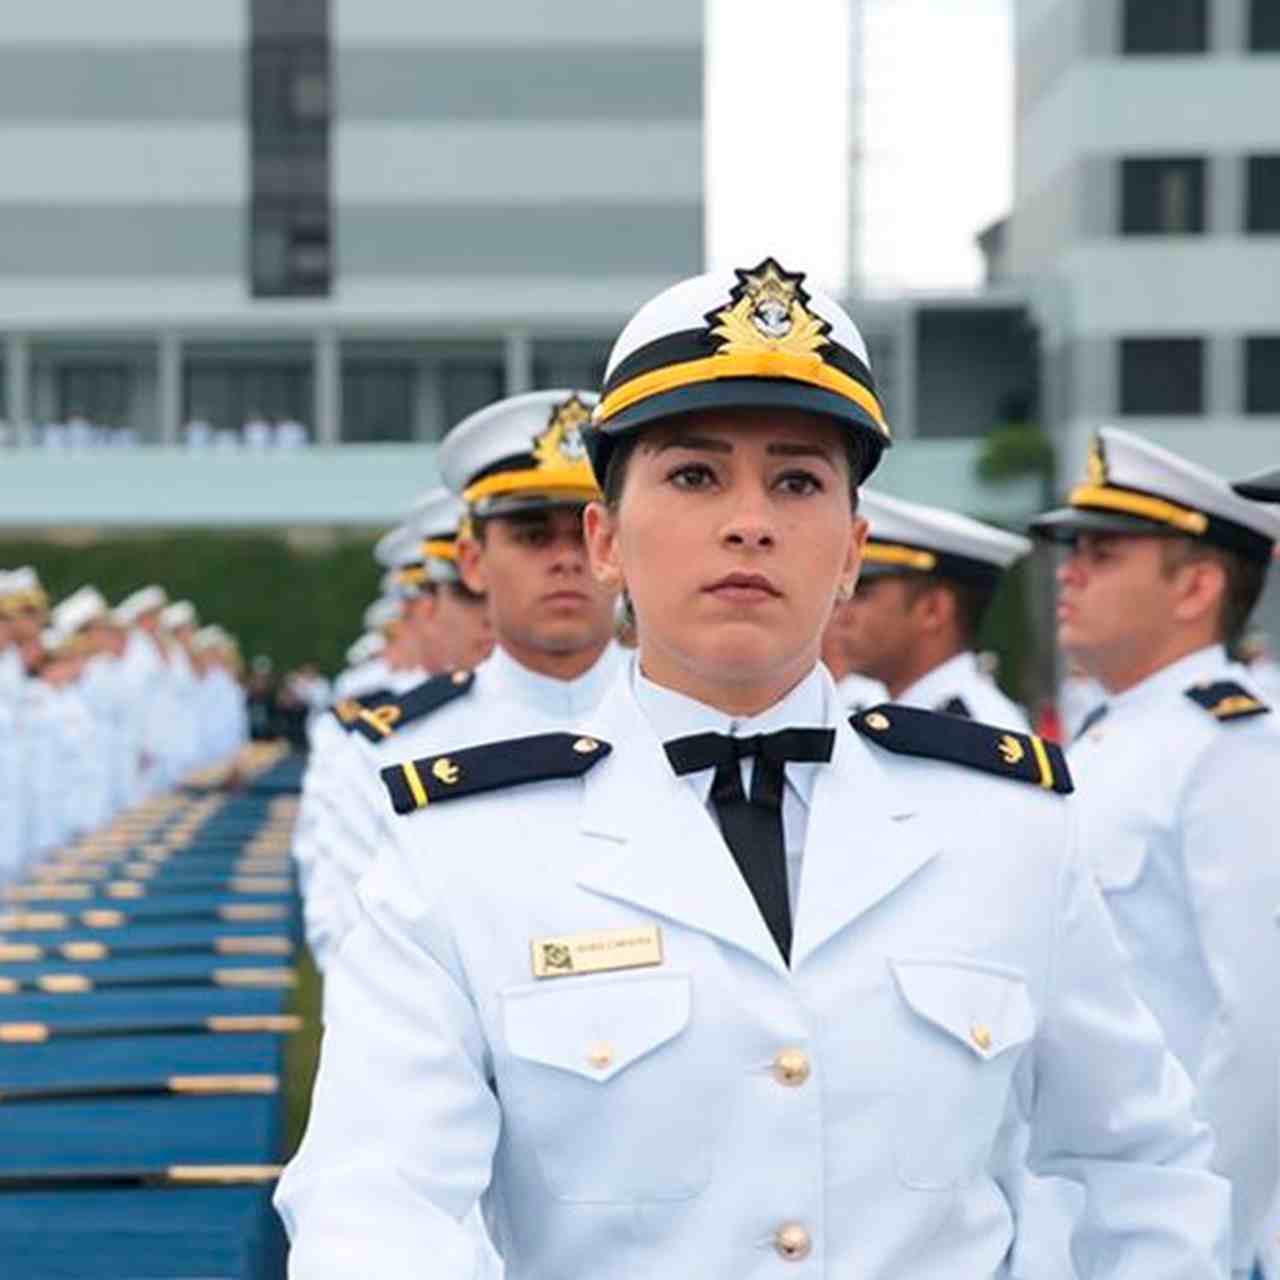  Concurso Marinha 2019 oferece 90 vagas para níveis médio e técnico, confira!